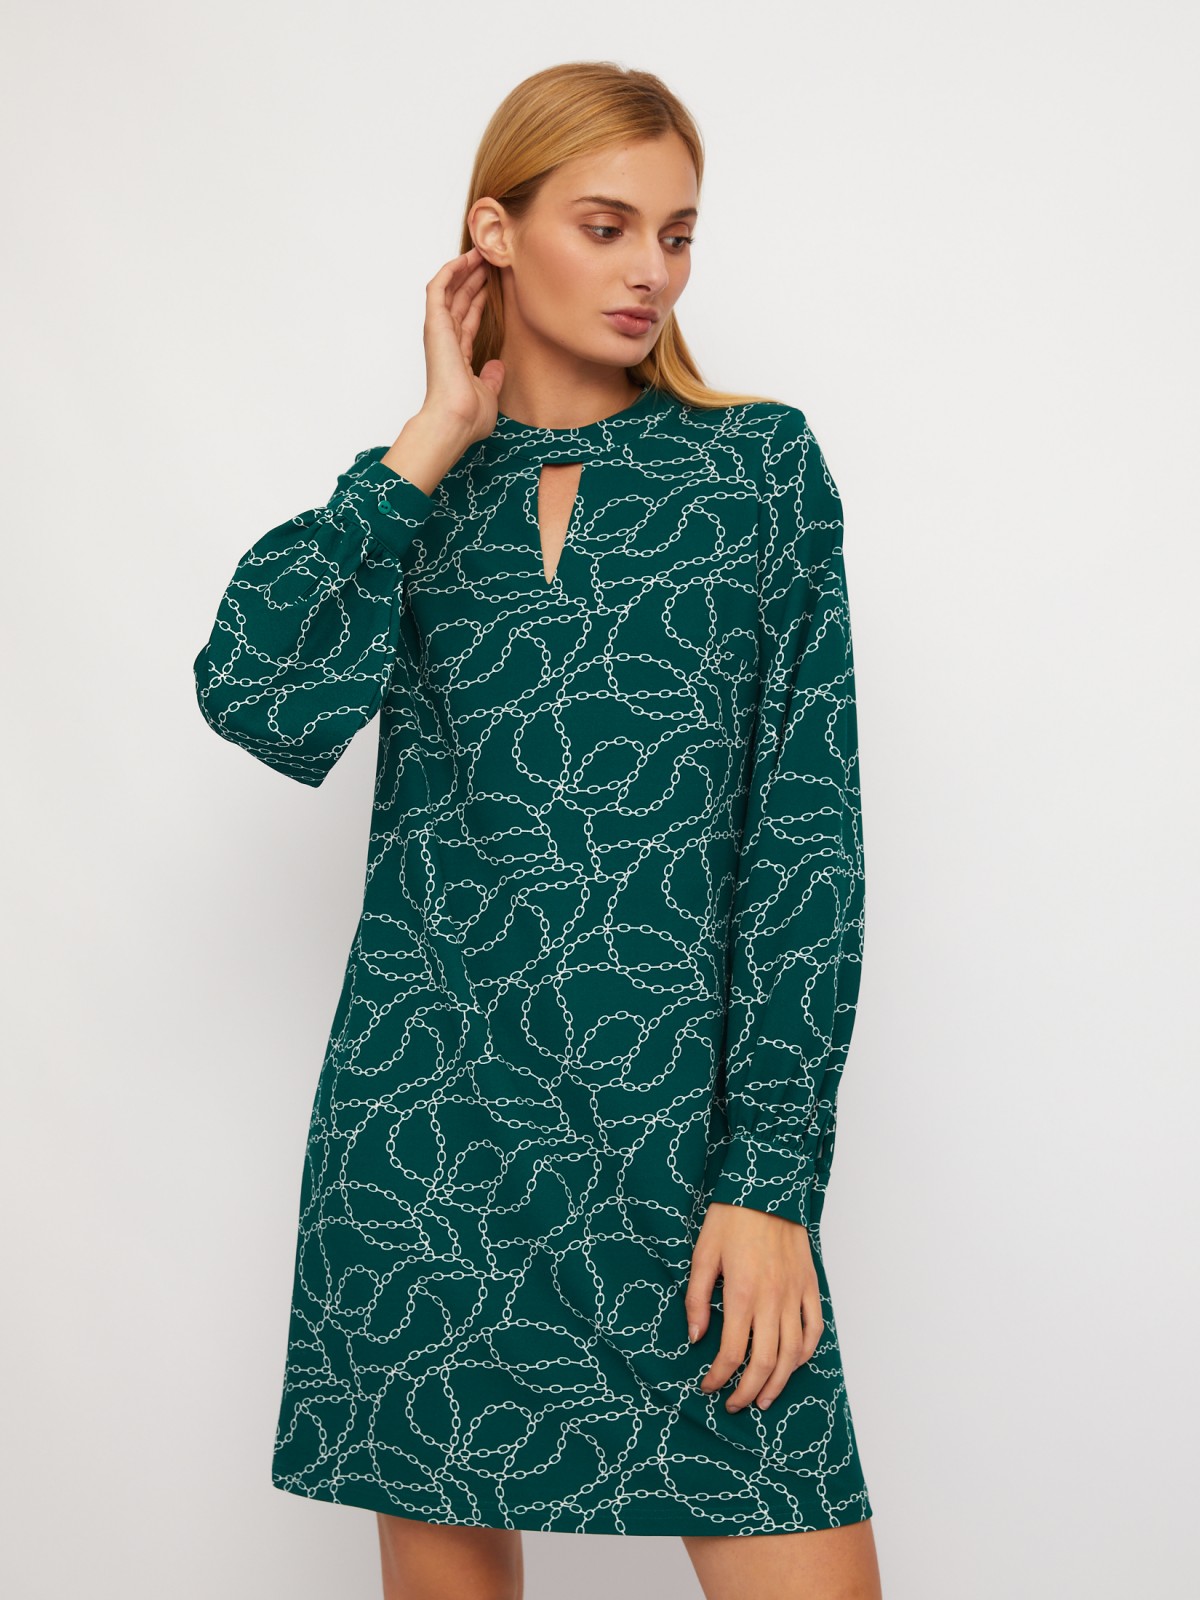 Платье длины мини с чокером и с принтом zolla 024118135203, цвет темно-зеленый, размер S - фото 1